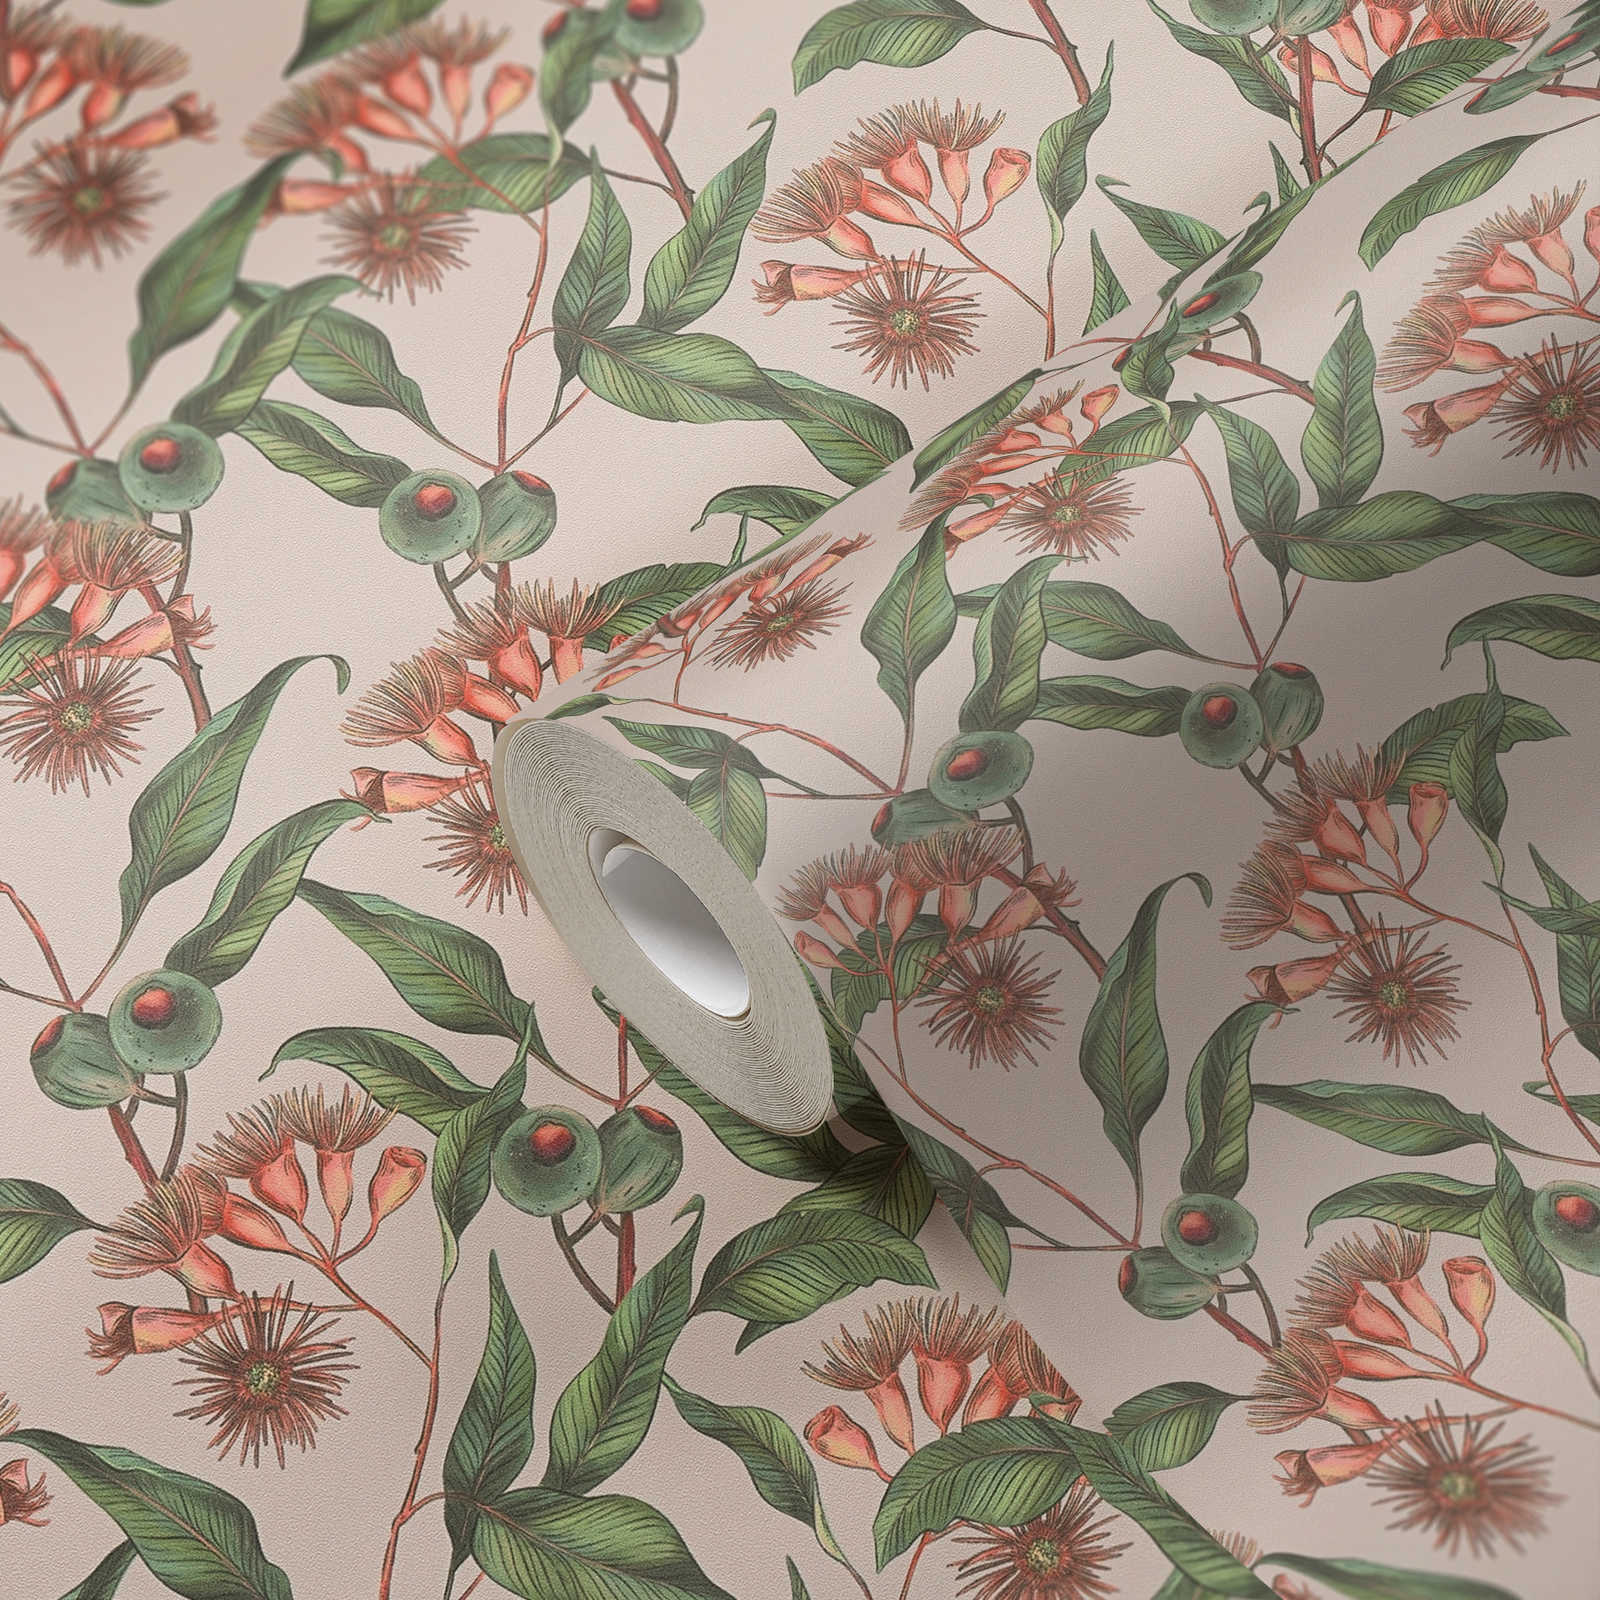             Moderne Tapete im floralen Stil mit Blättern & Blüten strukturiert matt – Beige, Grün, Rot
        